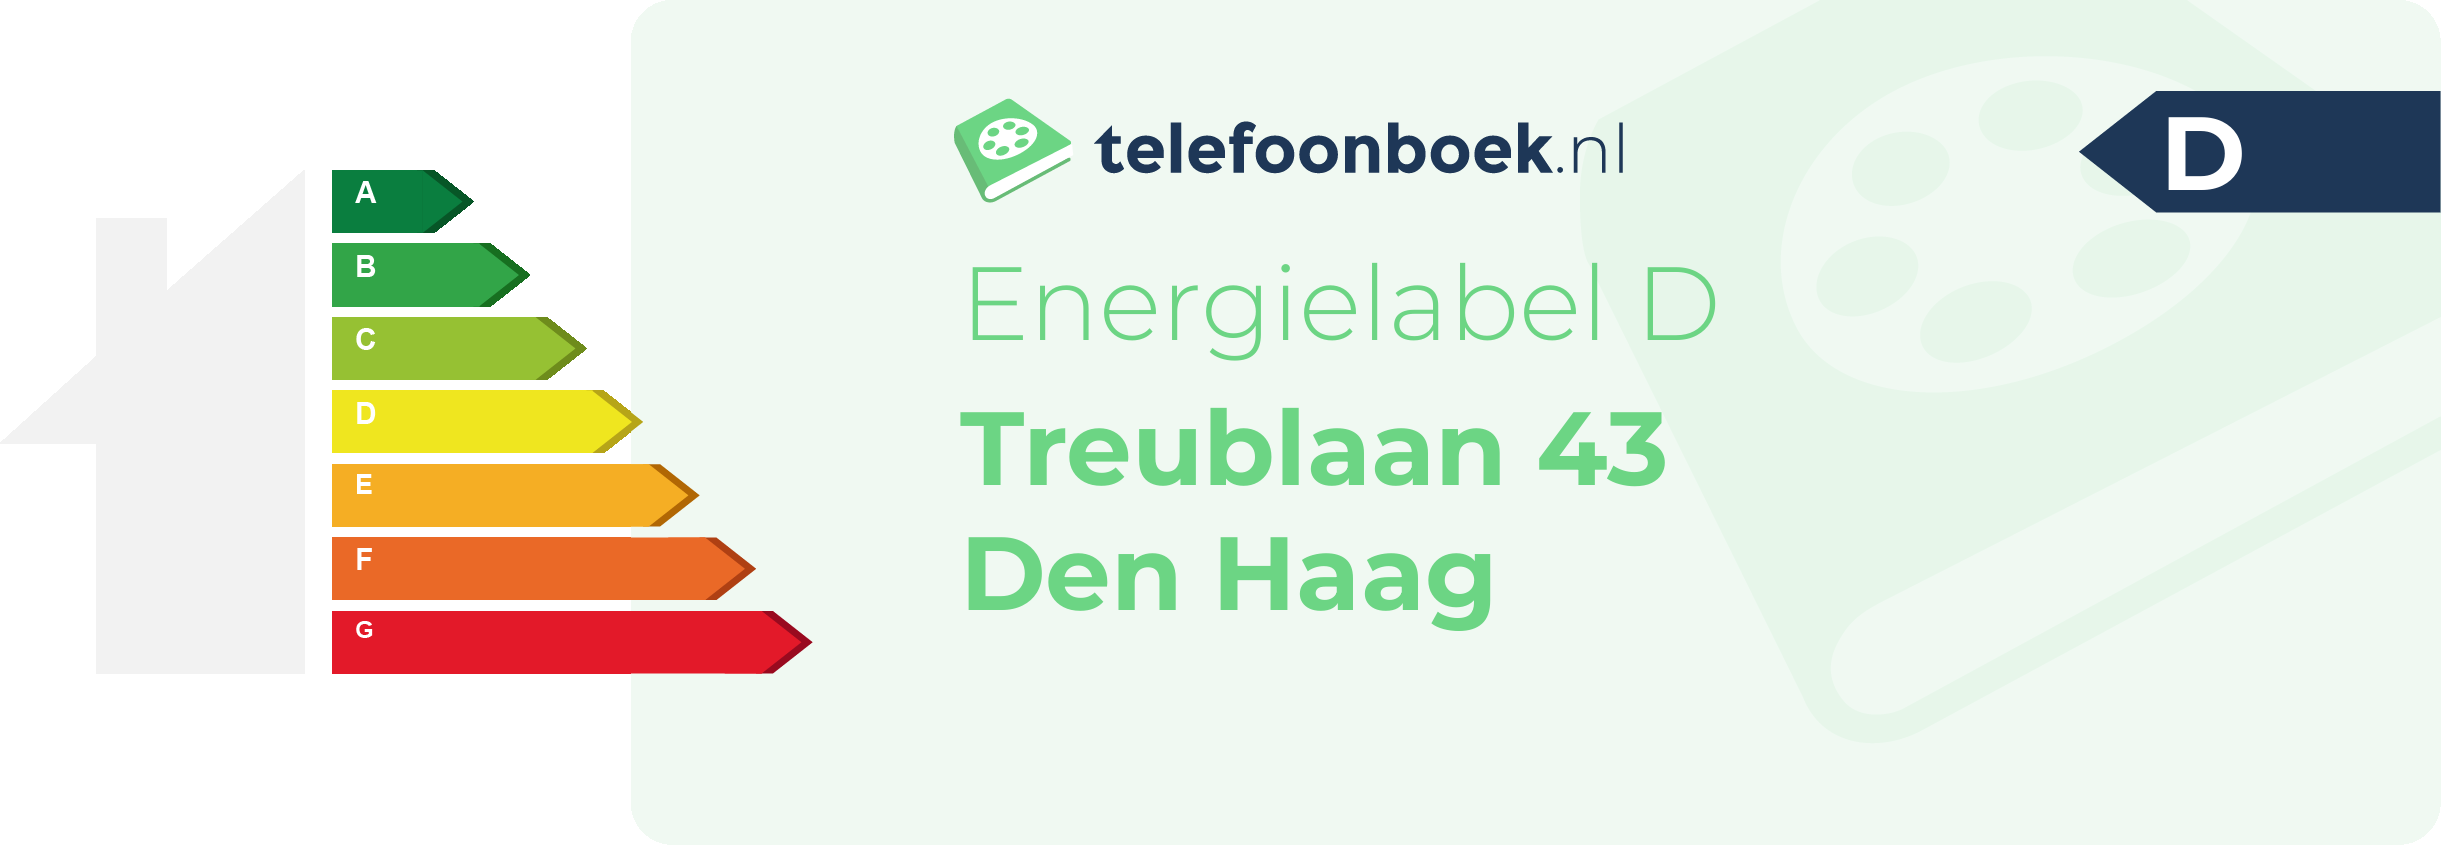 Energielabel Treublaan 43 Den Haag